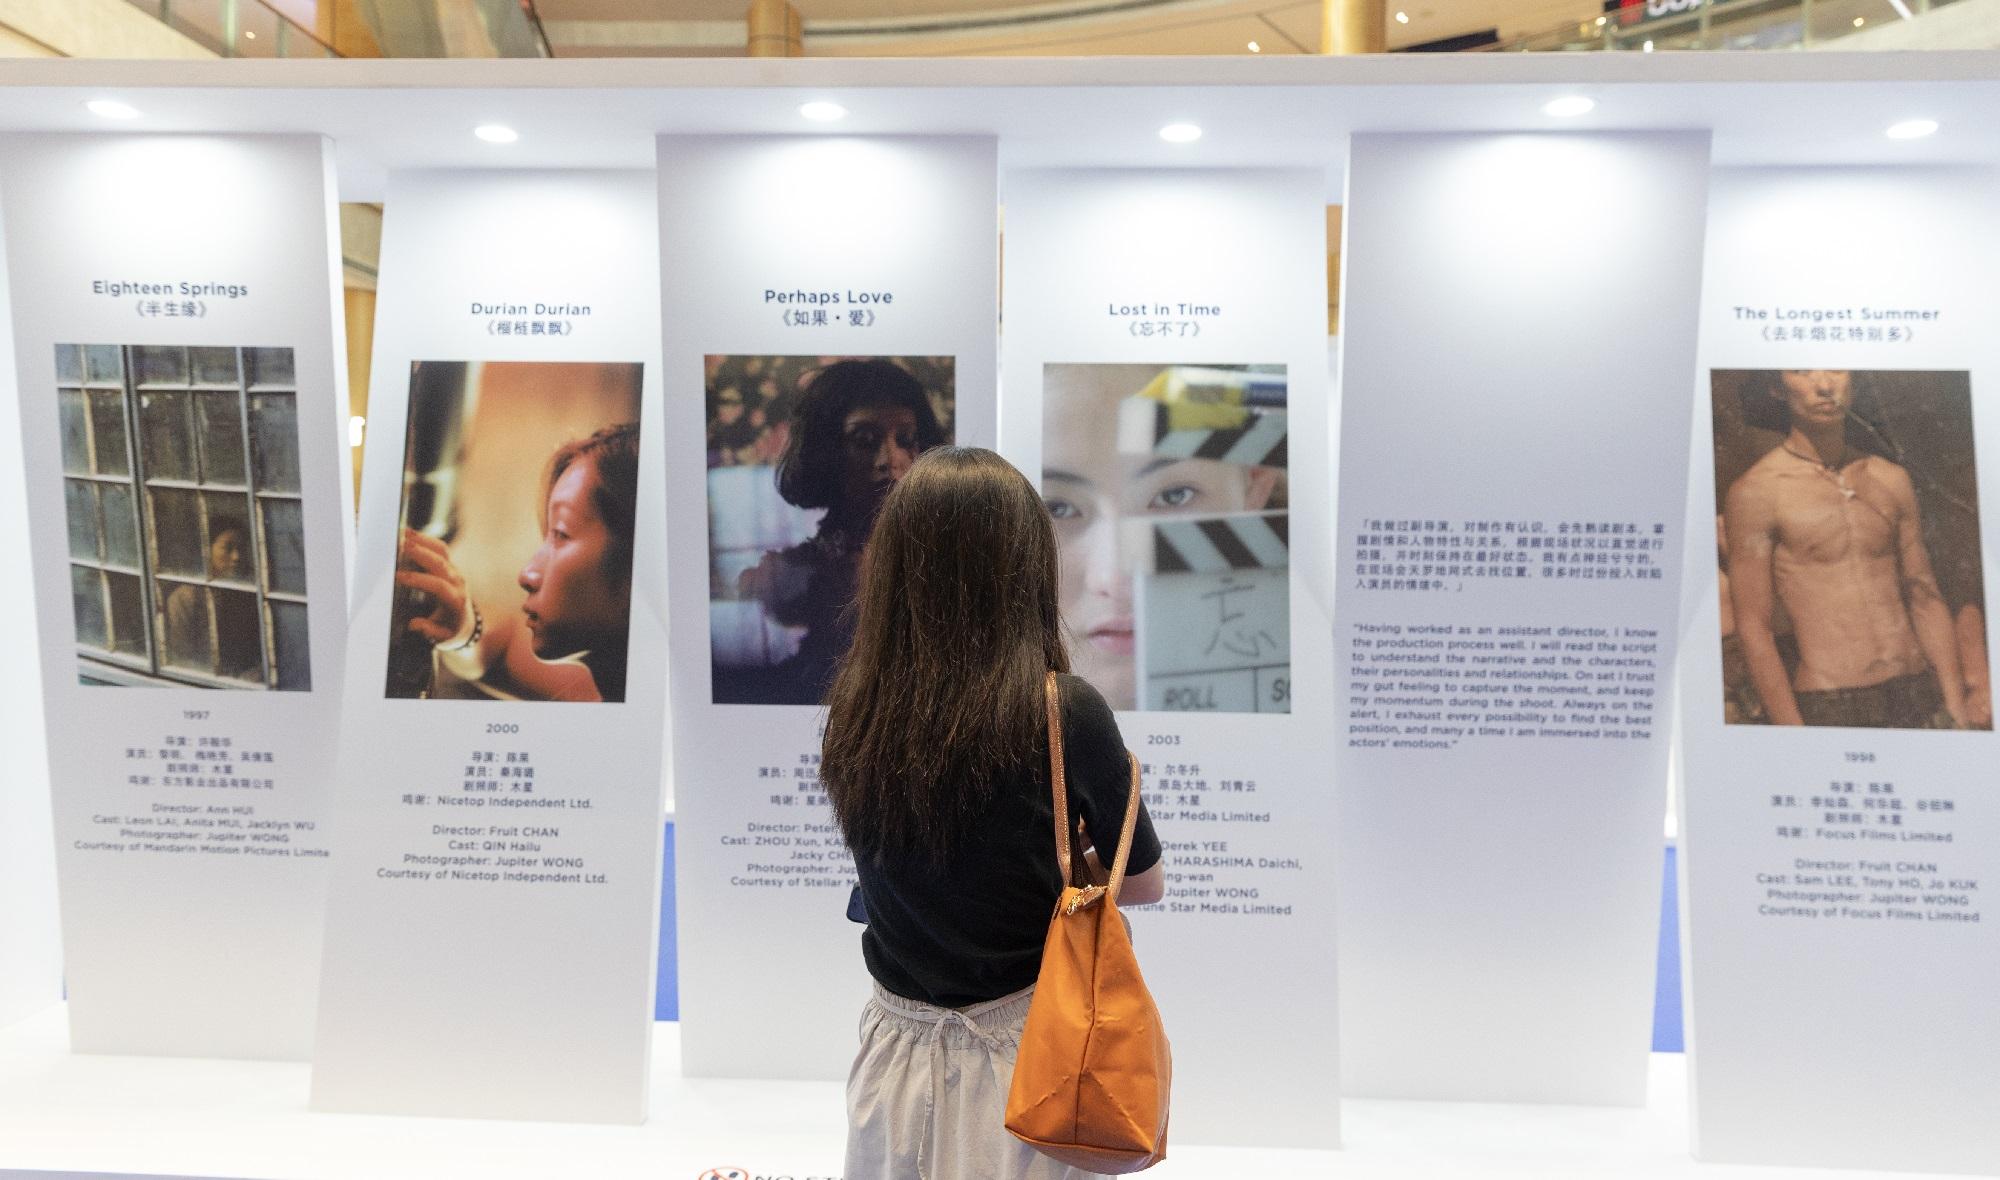 为庆祝香港特别行政区成立25周年，香港驻新加坡经济贸易办事处今日（九月二十三日）举行电影《一样的天空》首映礼，该电影为「光影浪潮：香港电影新动力」影展新加坡站的开幕电影。图示公众参观在新达城举办的剧照展览，该展览展出四位才华横溢的香港电影剧照师木星、王伟伦、曾觅和李诗卉的作品。